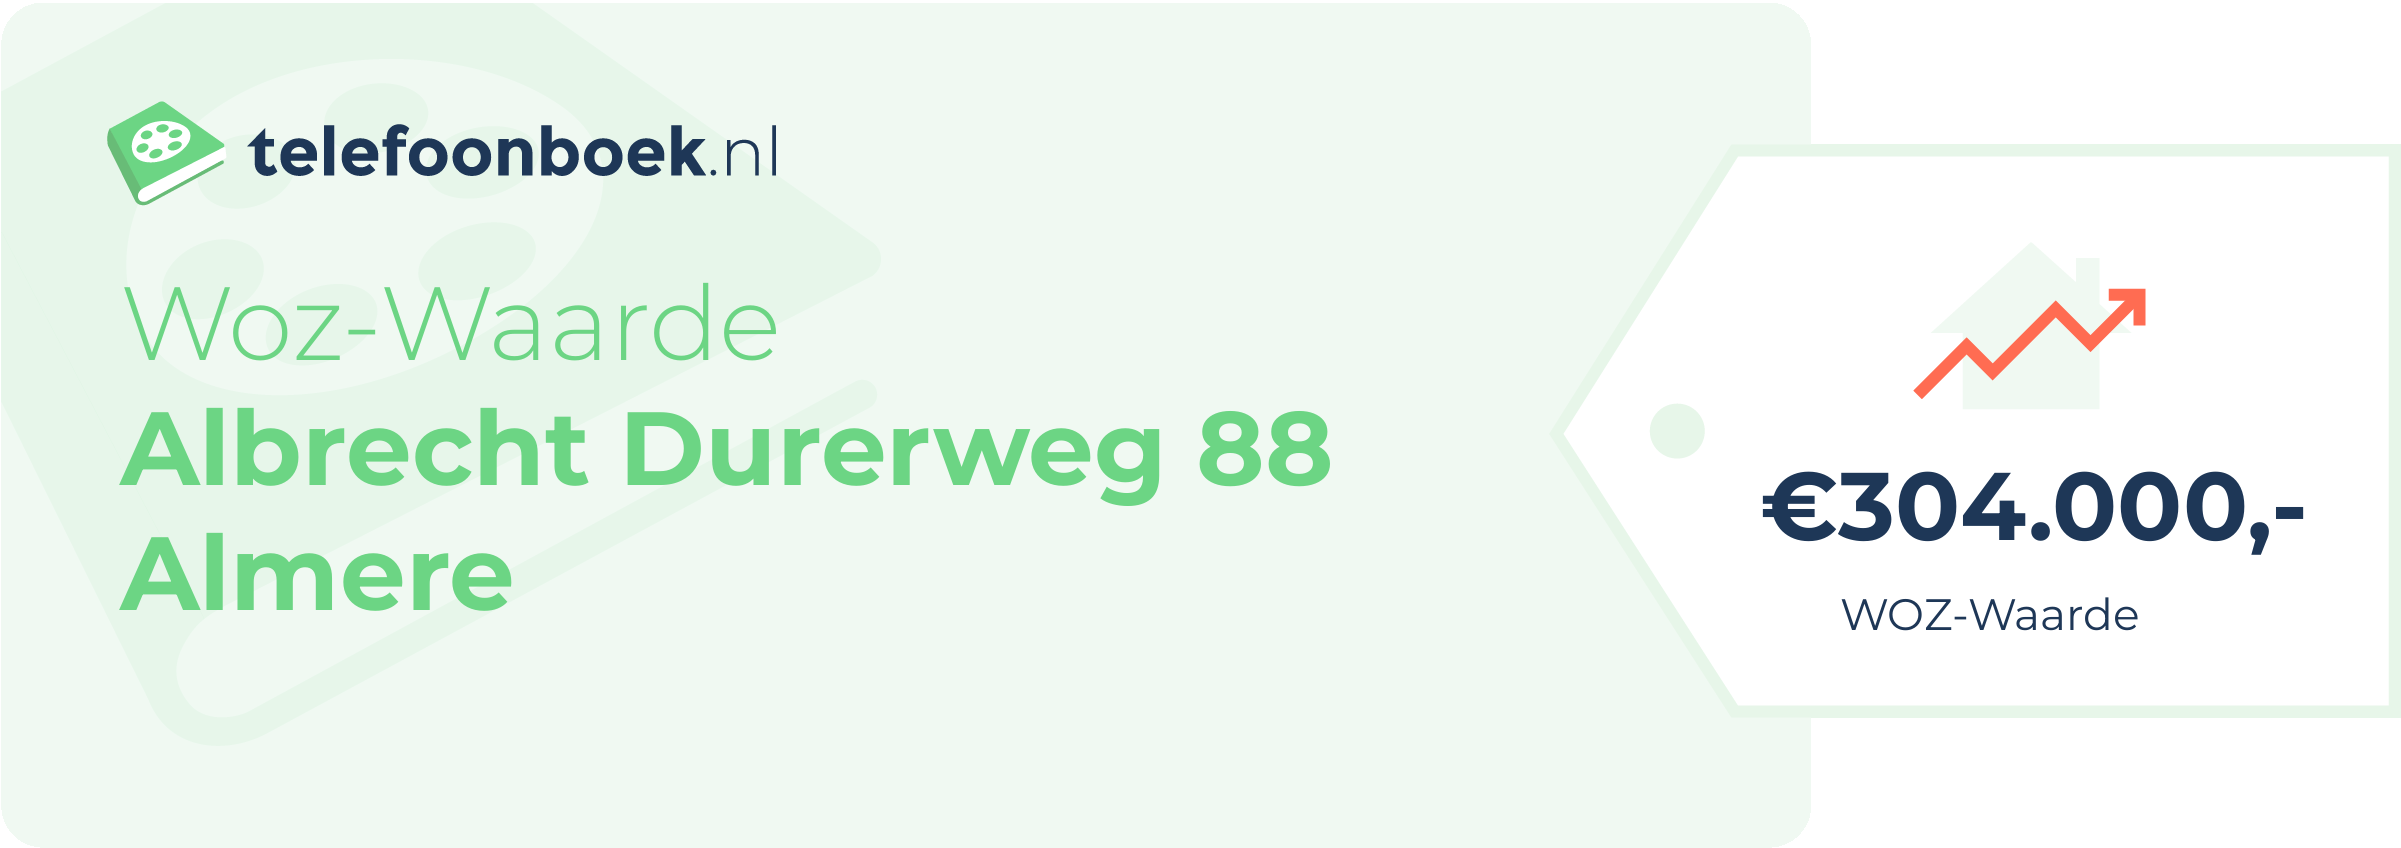 WOZ-waarde Albrecht Durerweg 88 Almere